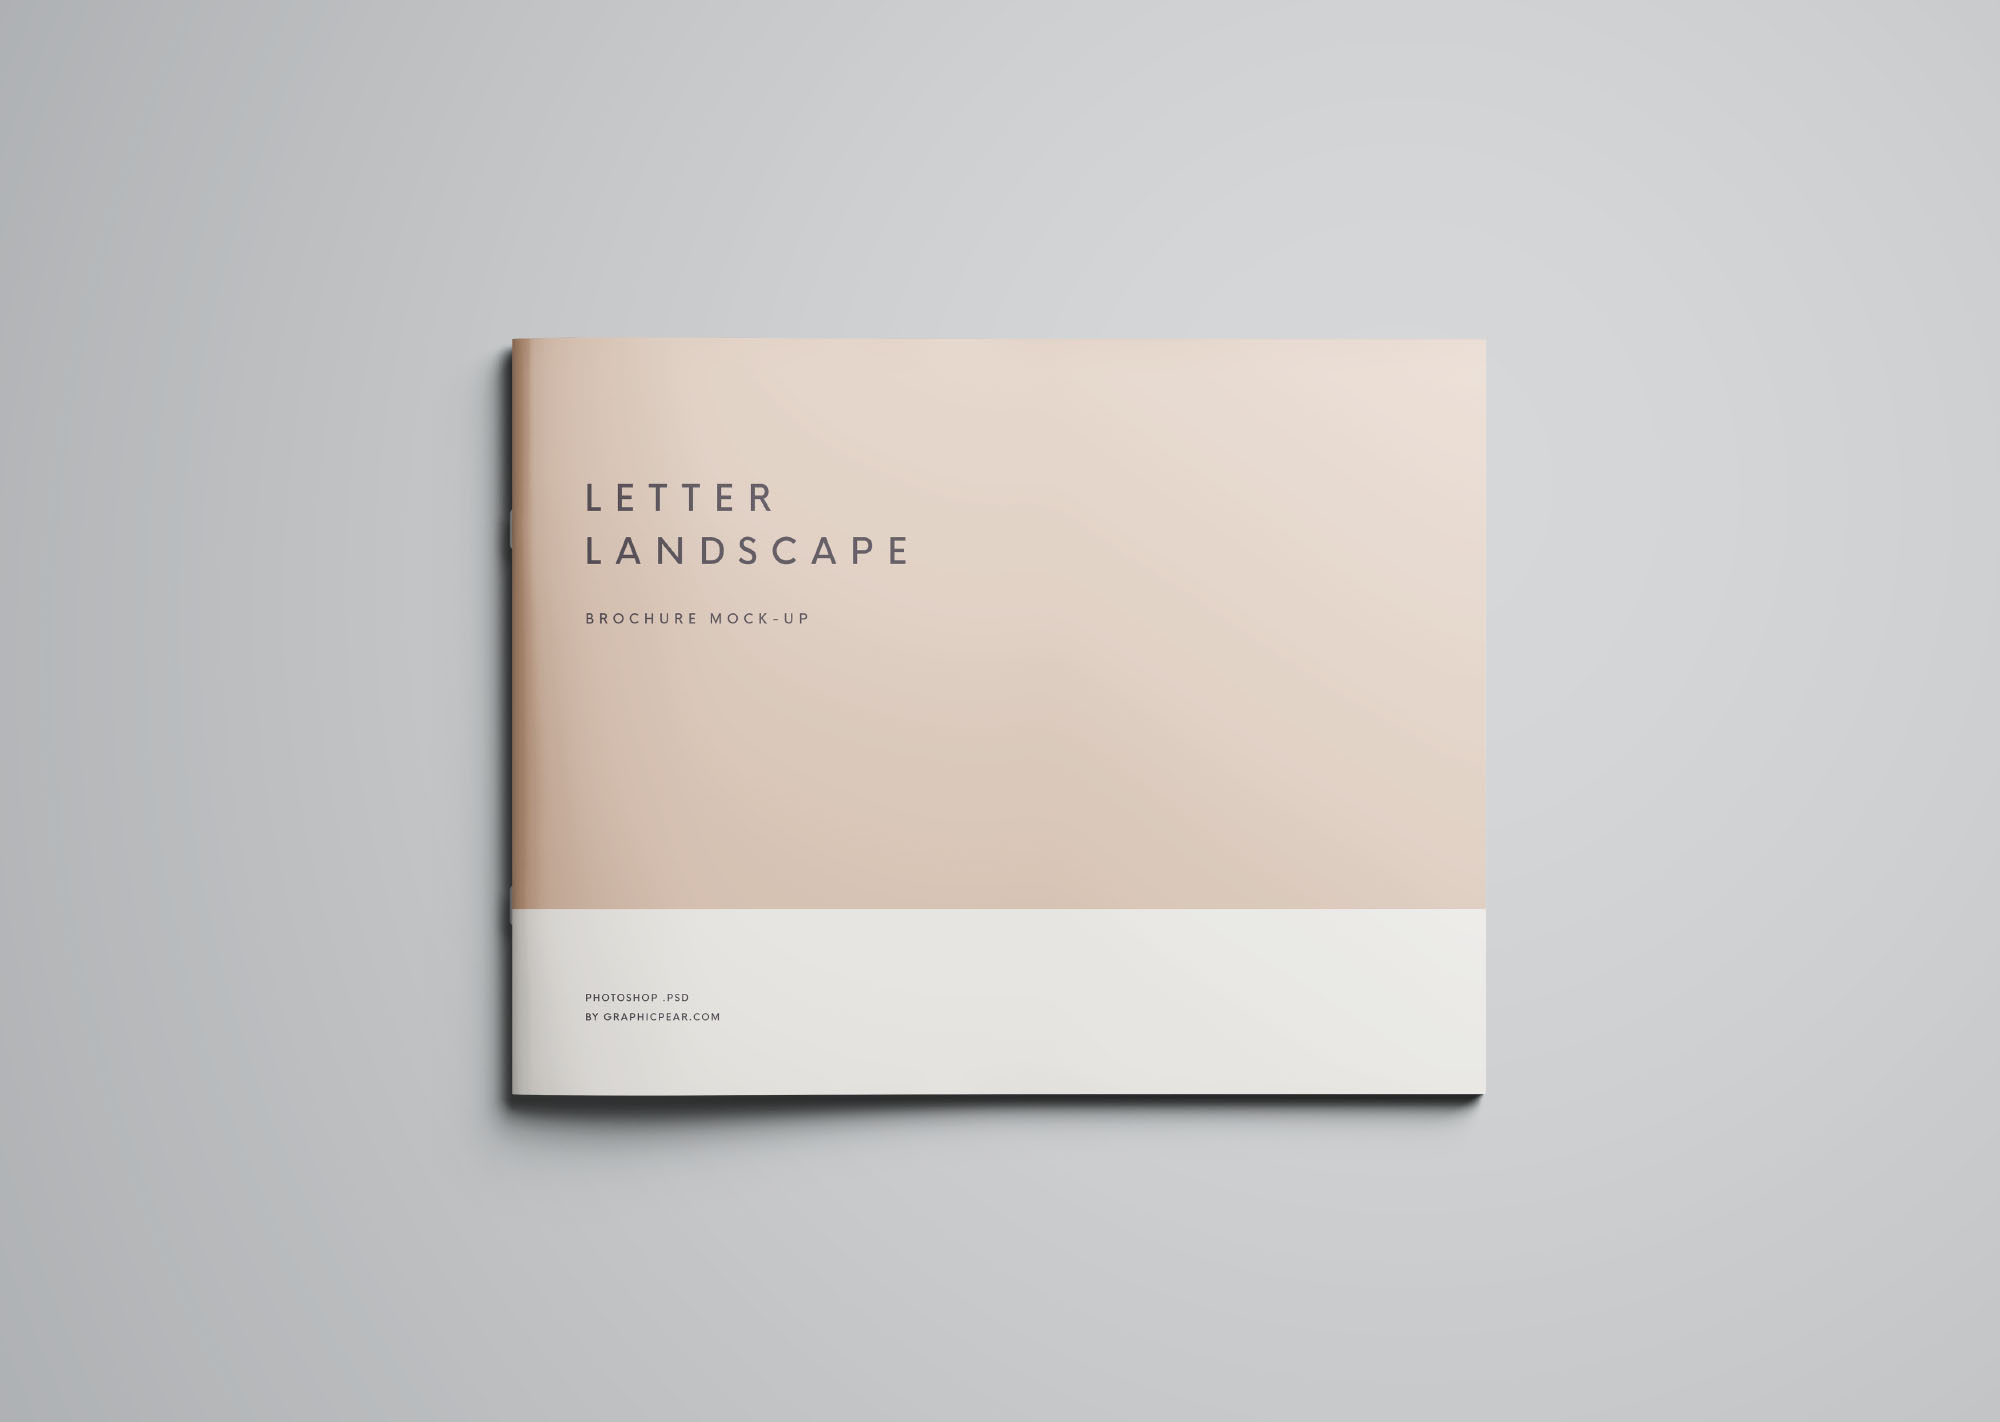 信纸尺寸规格横向小画册样机模板 Letter Landscape Brochure Mockup插图(1)